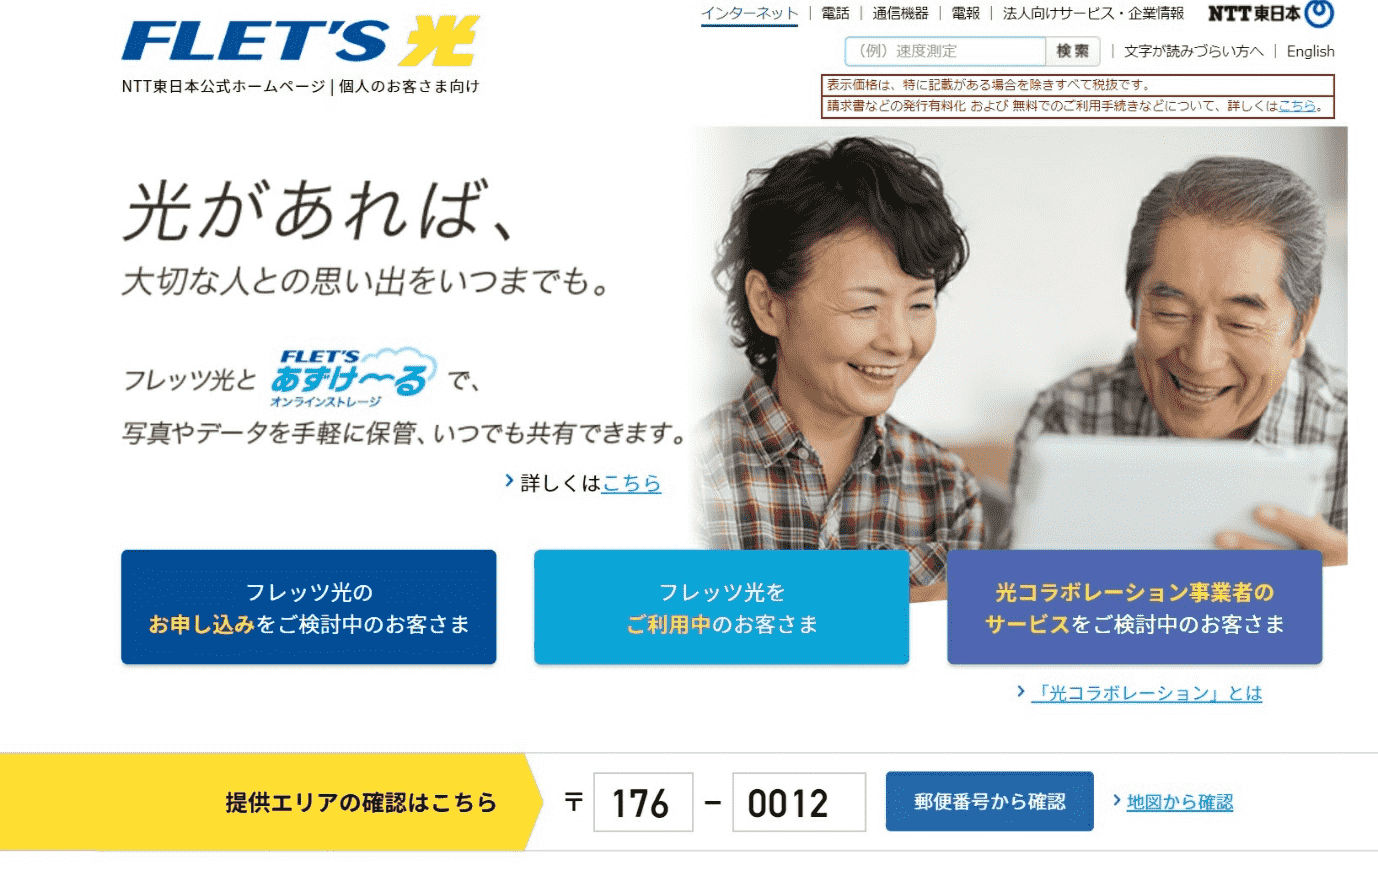 東日本エリア内でSo-net光を契約したい人は、フレッツ光東日本版のサイトからエリア検索を行う